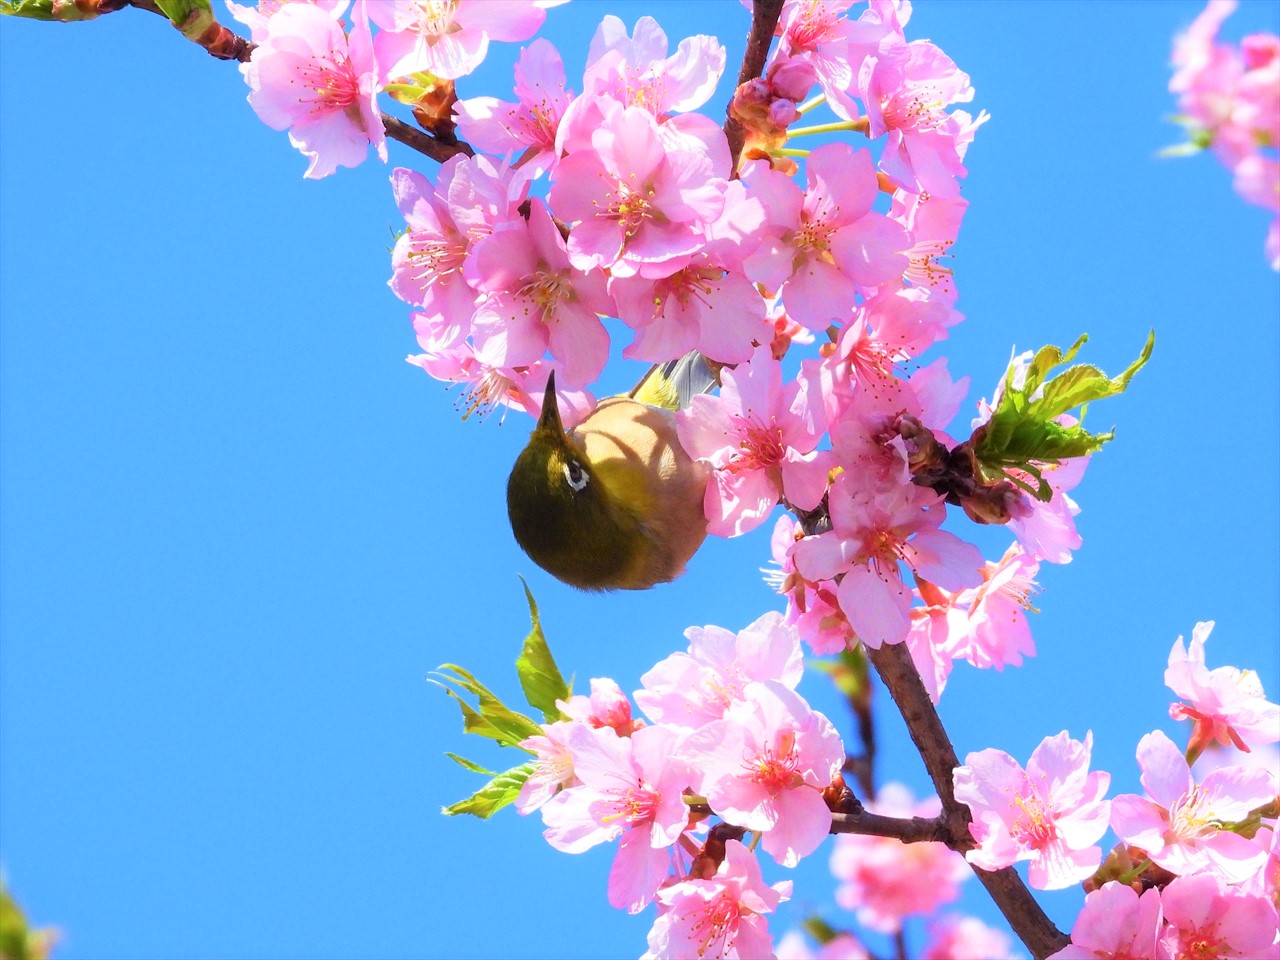 DSCN5227 (2)緋寒桜にメジロ２０２２年３月１５日AM９：５７